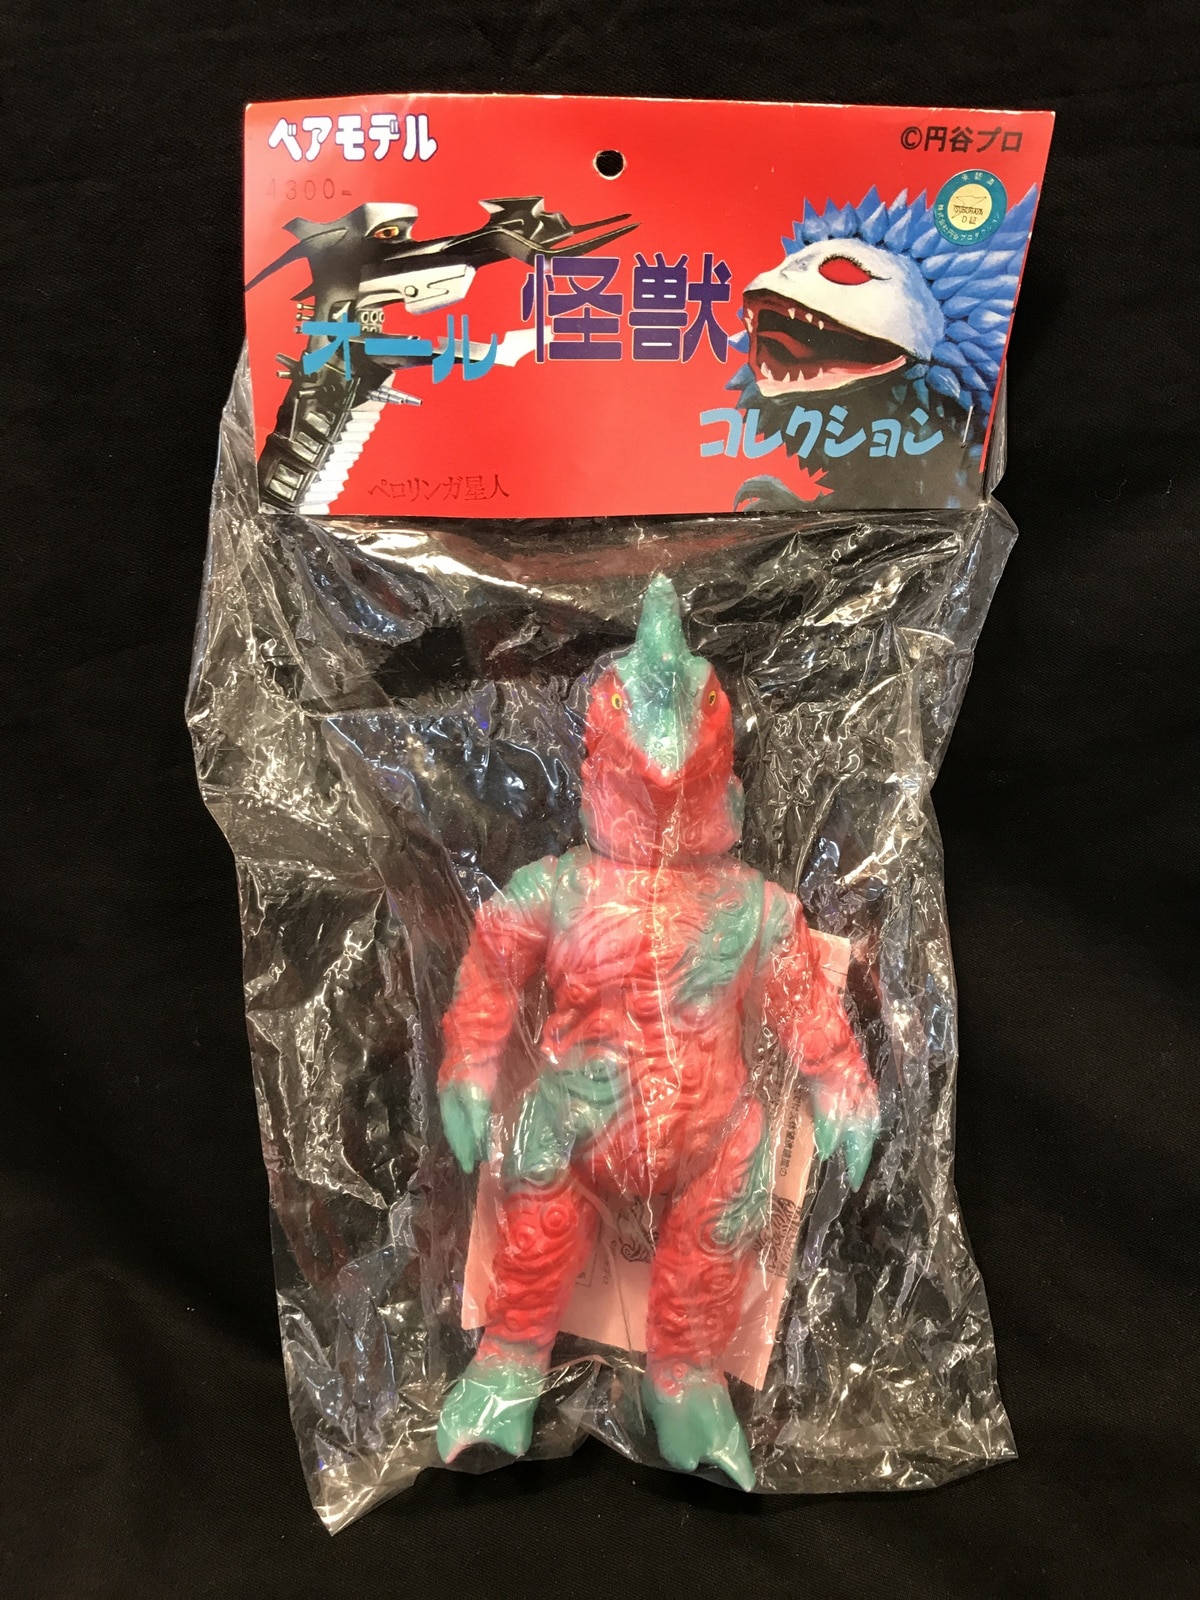 ベアモデル オール怪獣コレクション ペロリンガ星人 ピンク成型 赤緑